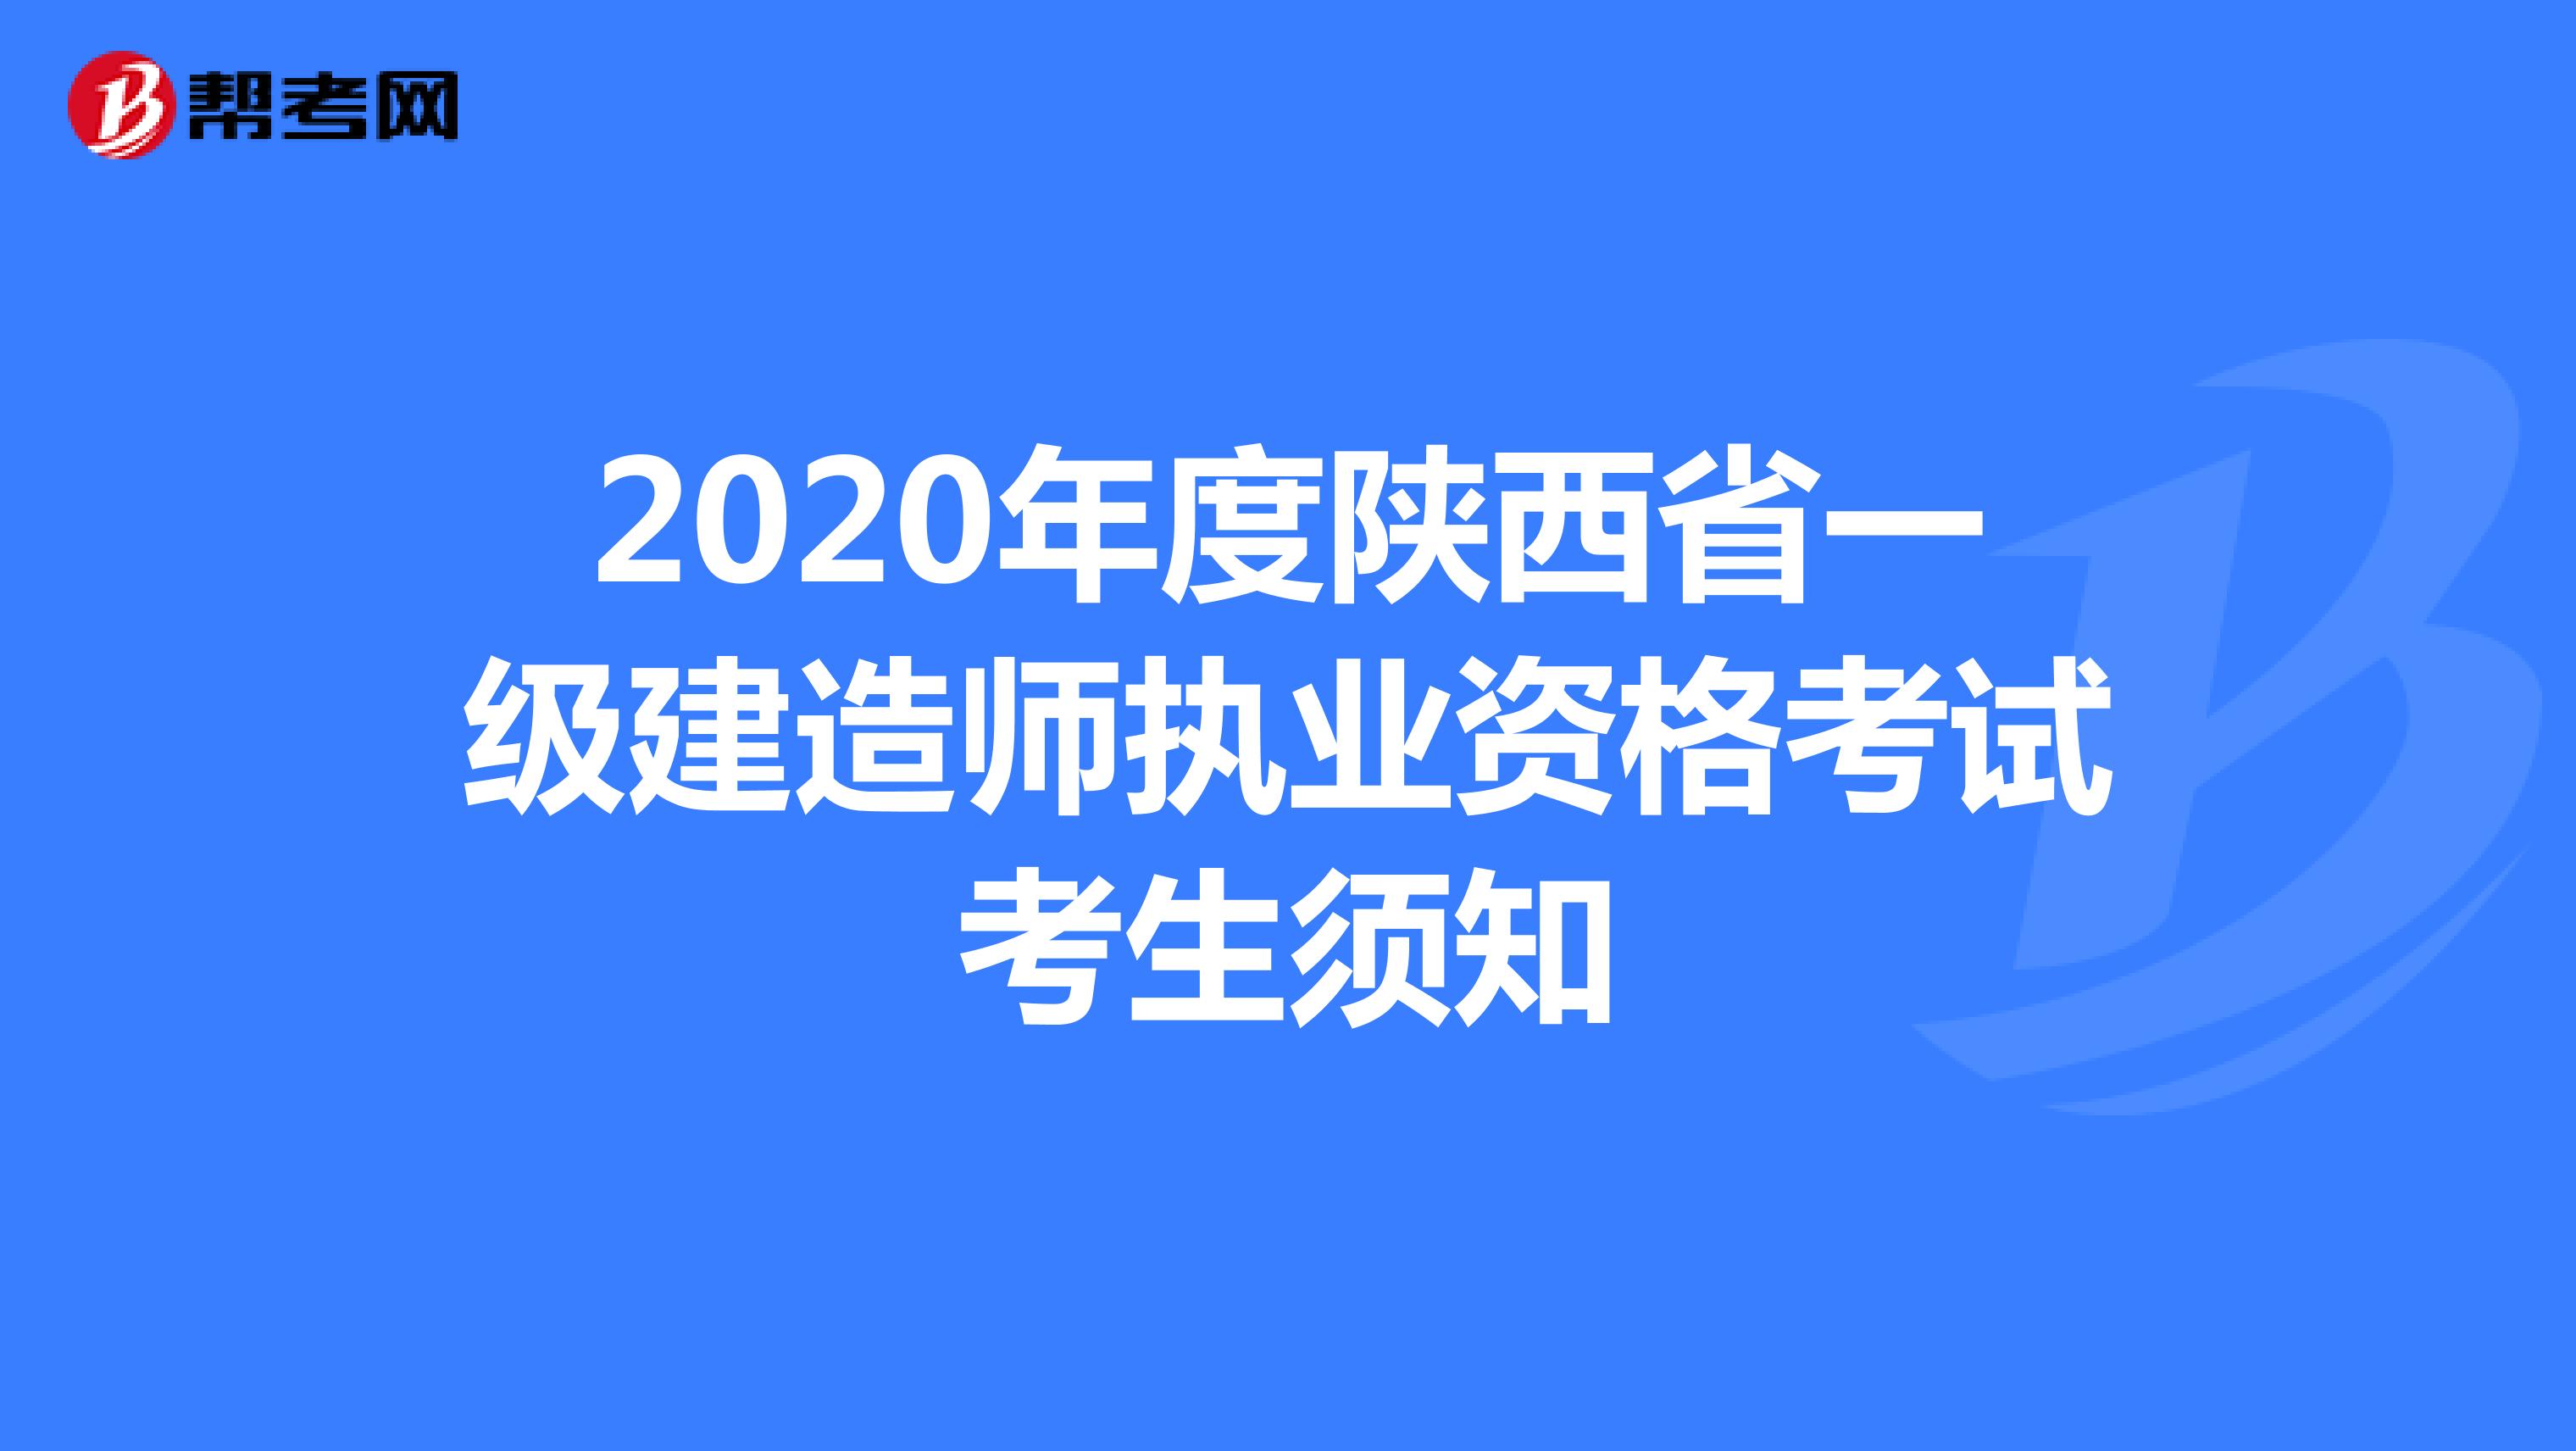 2020年度陕西省一级建造师执业资格考试考生须知